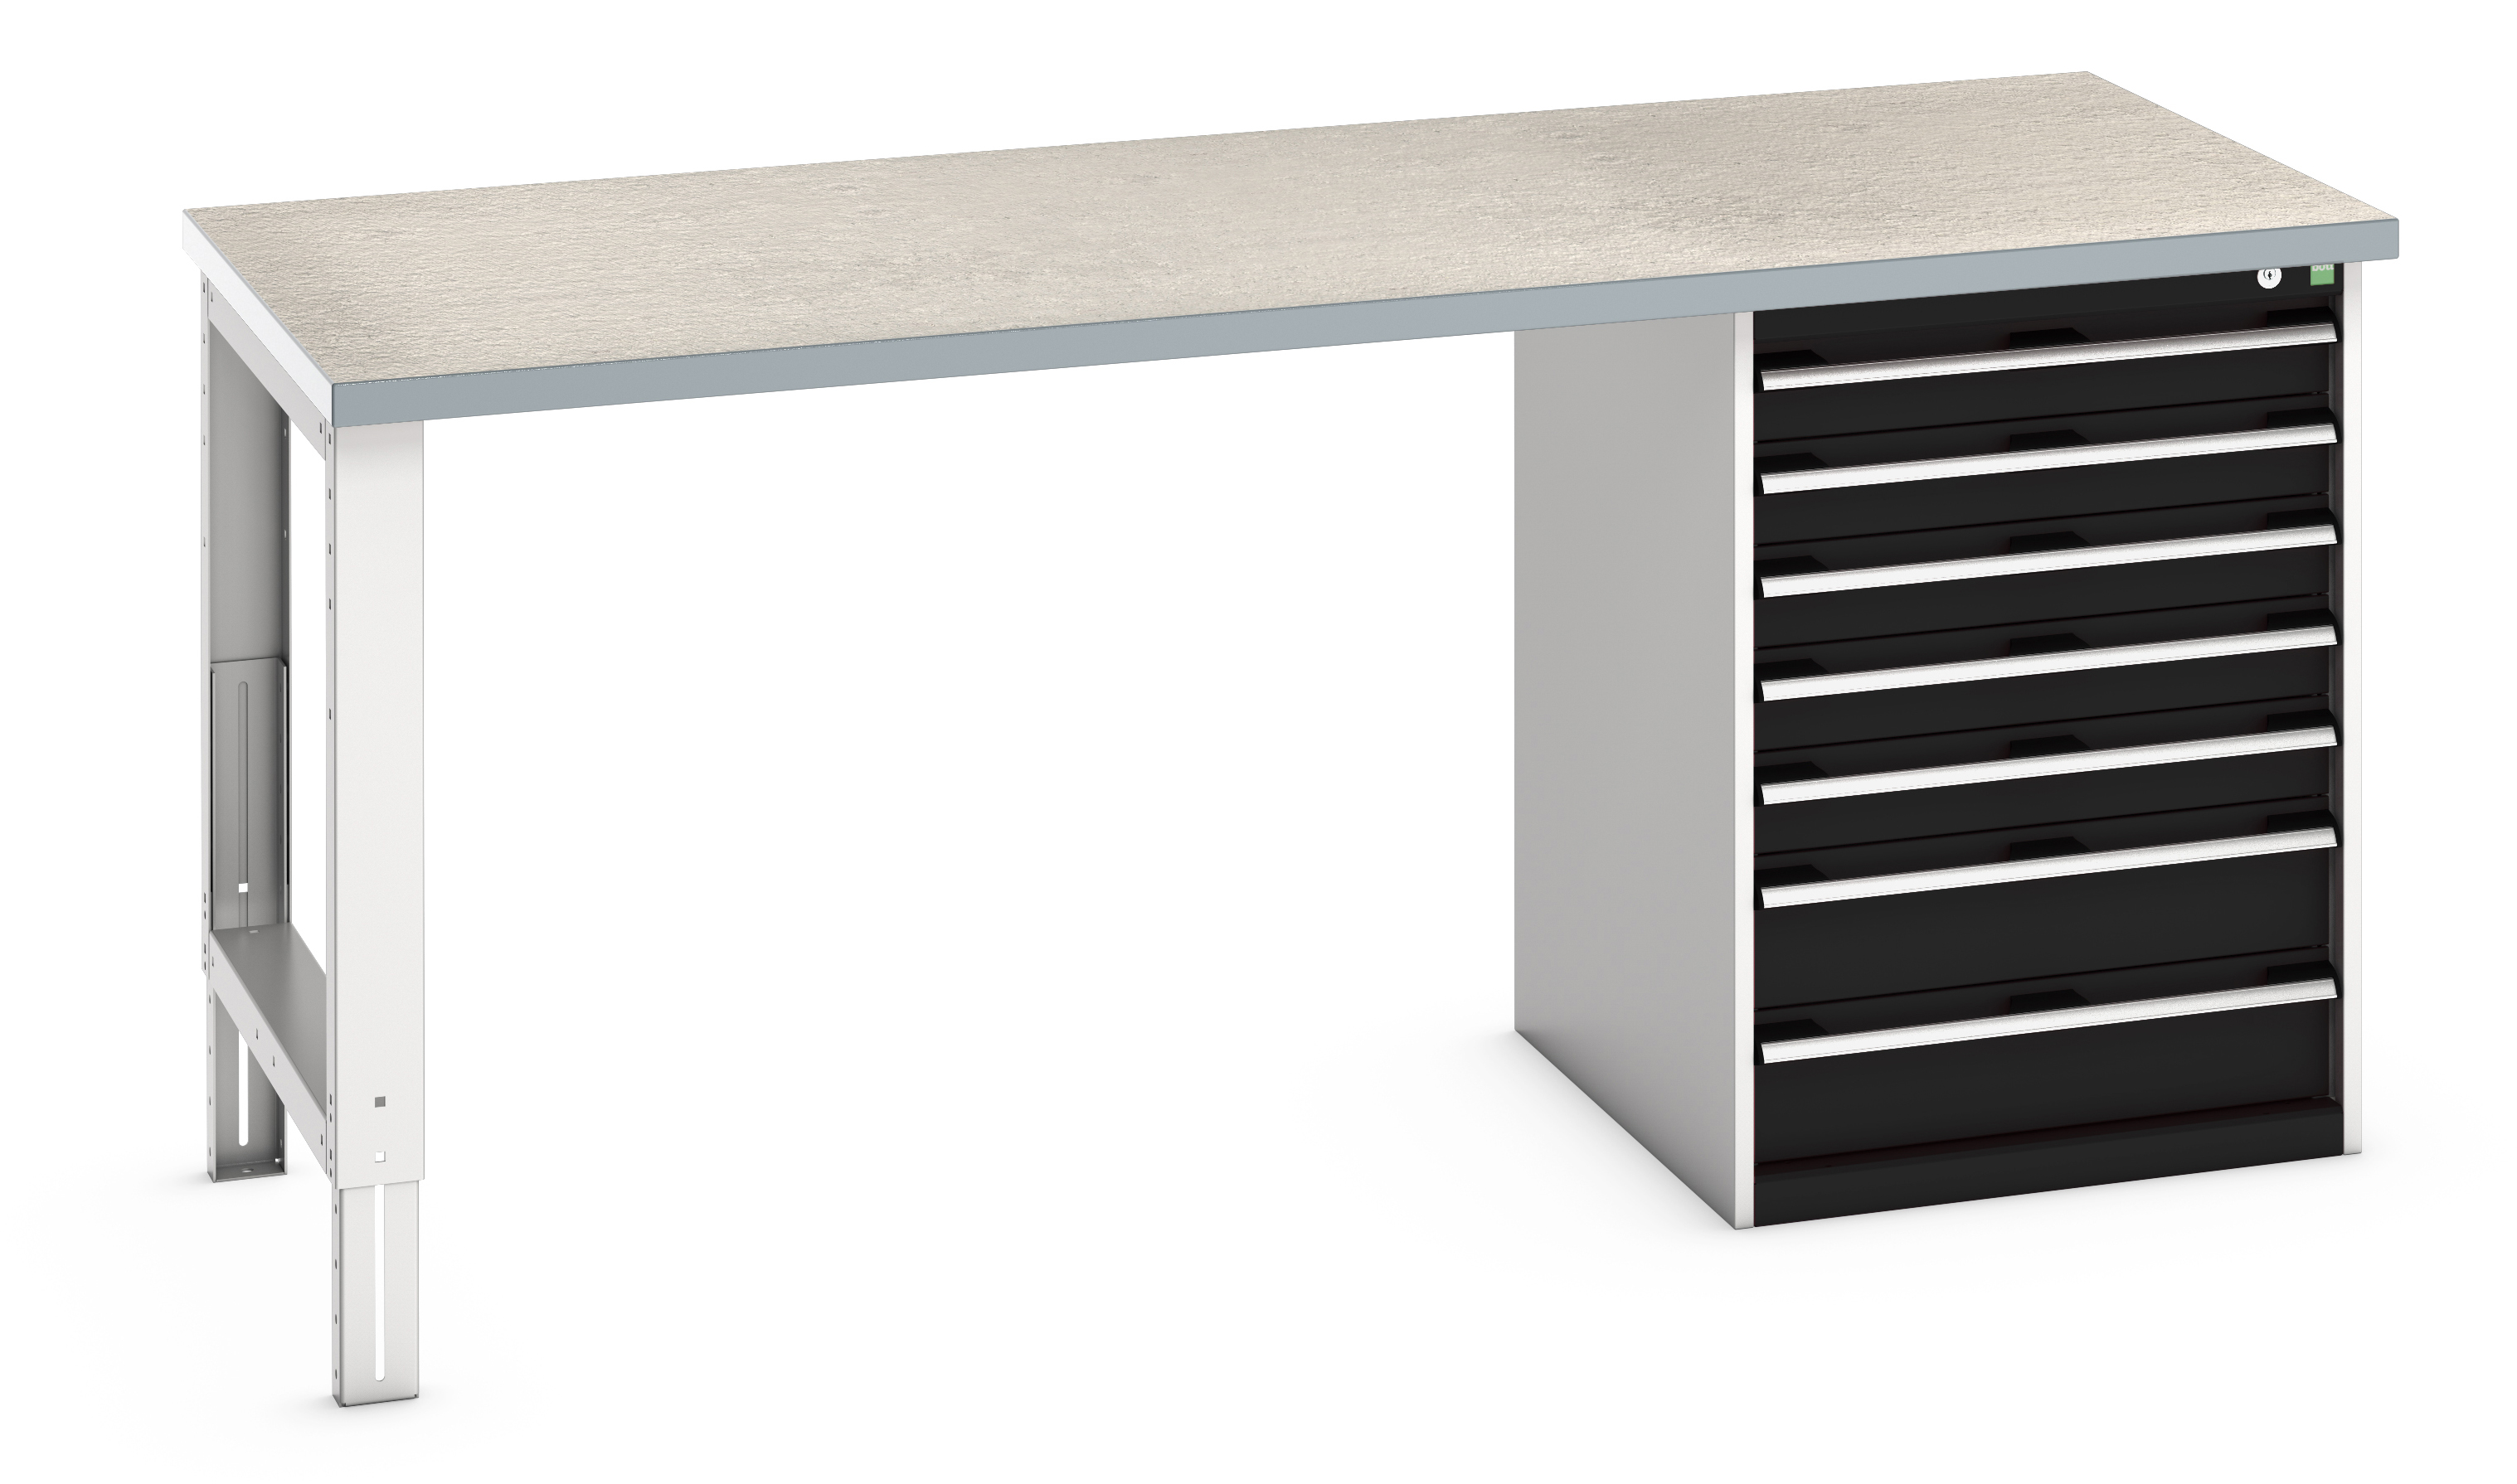 Bott Cubio Pedestal Bench With 7 Drawer Cabinet - 41004124.19V